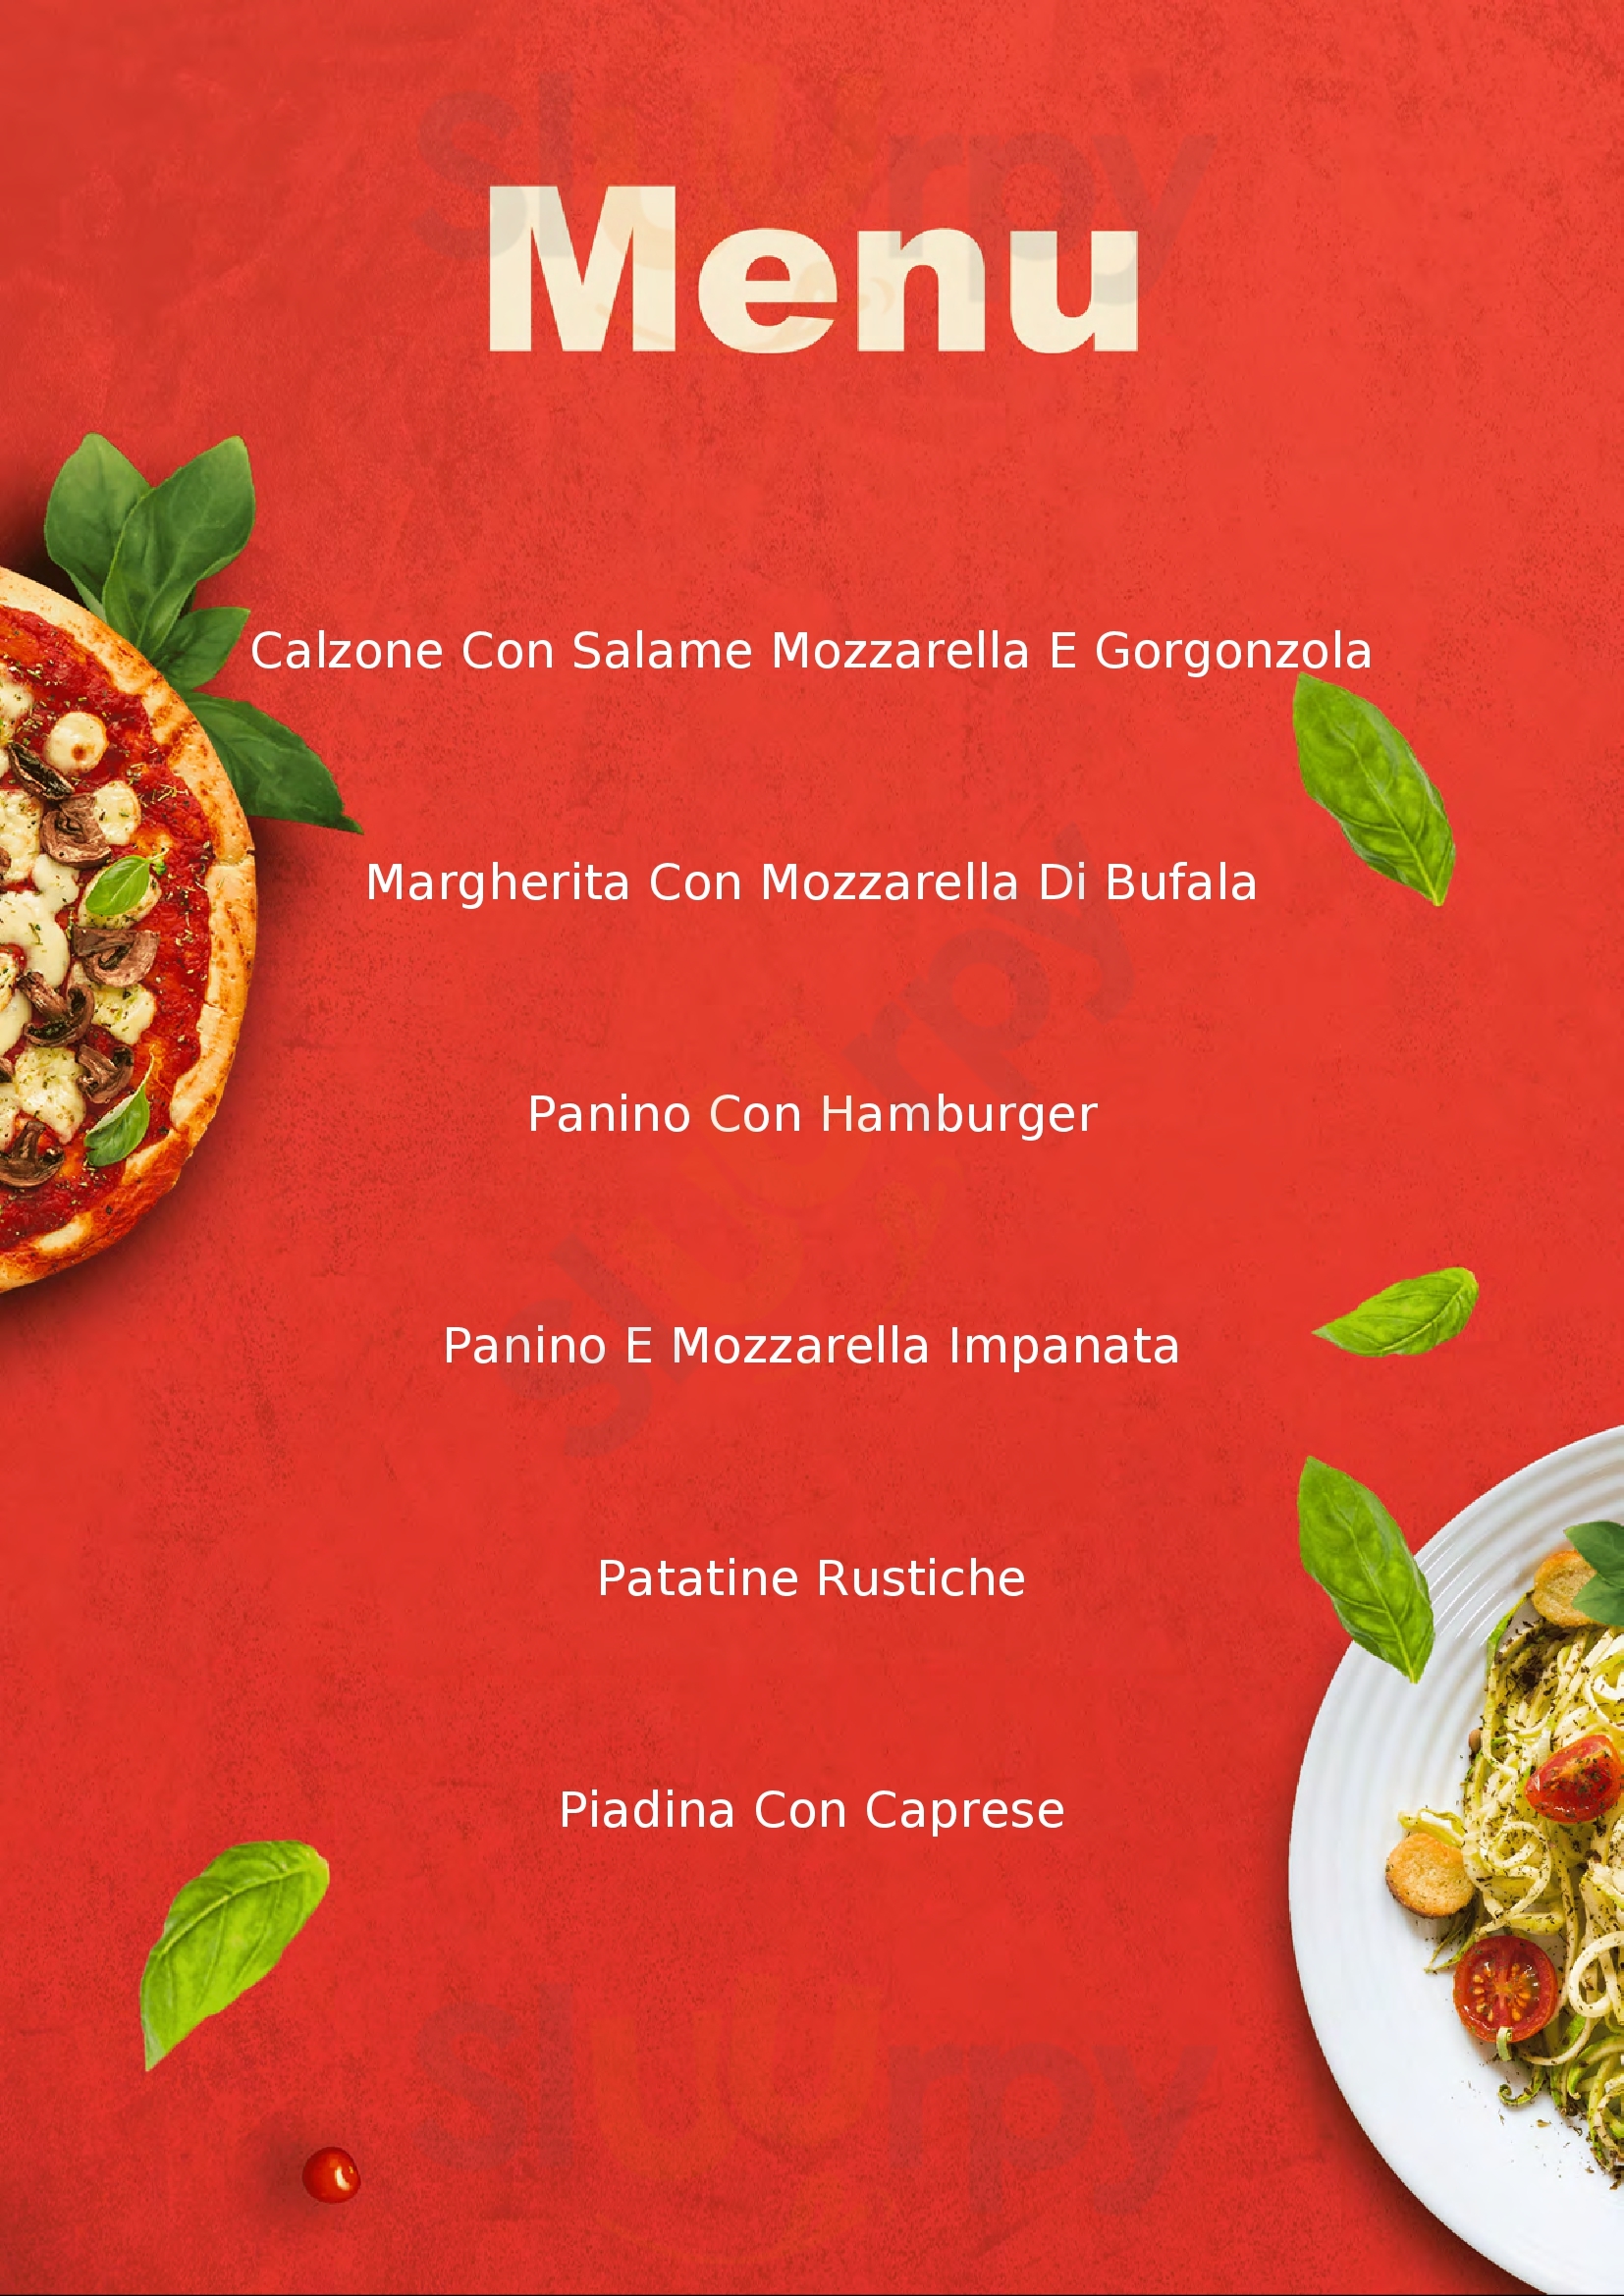 L' Ancora - Ristorante-Pizzeria Sant'Elia Fiumerapido menù 1 pagina